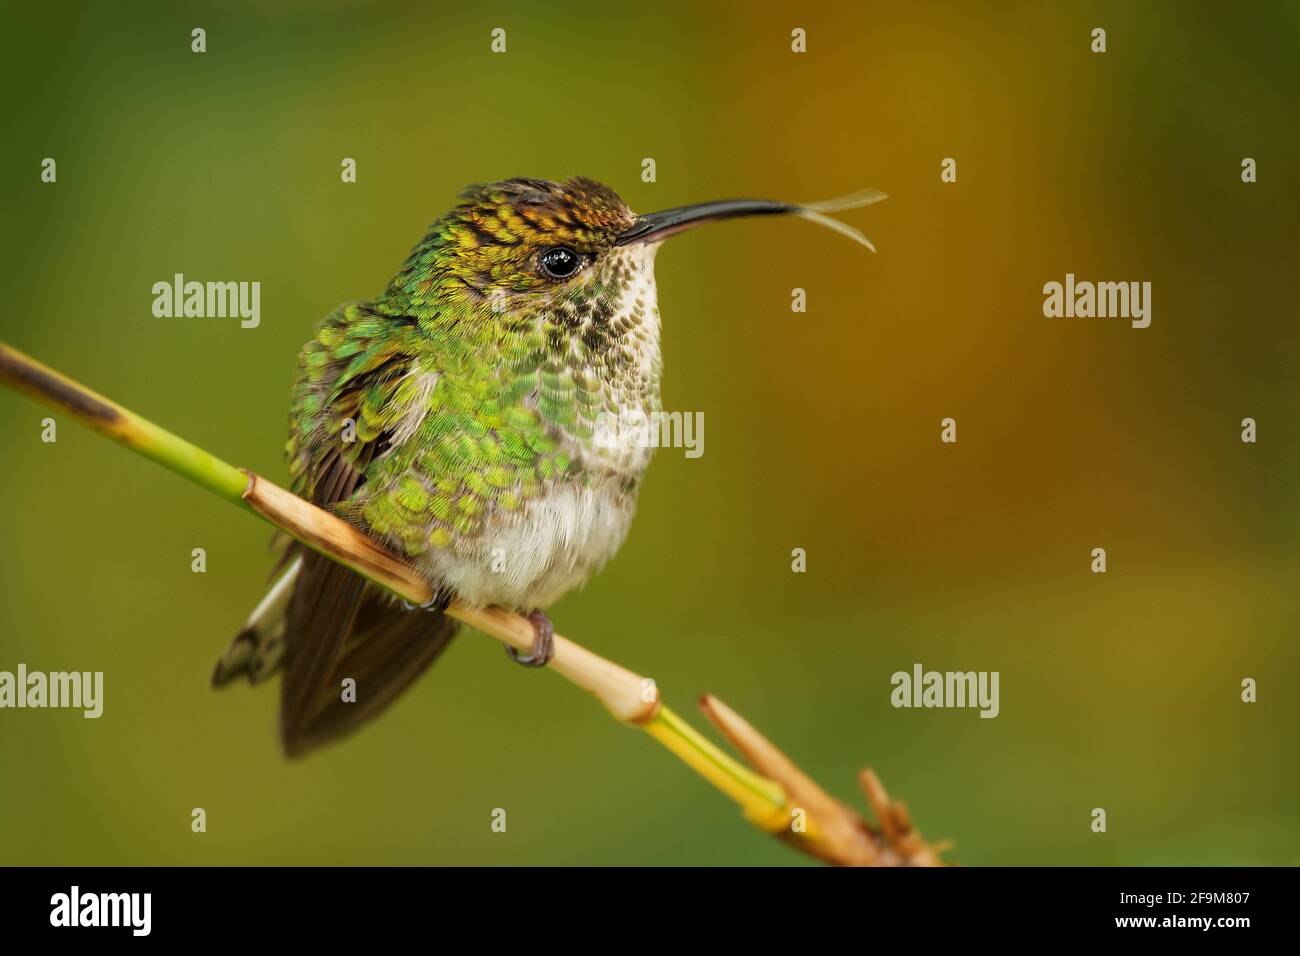 Kupferköpfiger Smaragd - Elvira Cupreiceps kleiner Kolibri, der in Costa Rica endemisch ist, Vögel ernähren sich von Nektar und kleinen Wirbellosen, pazifischer Hang von Gua Stockfoto